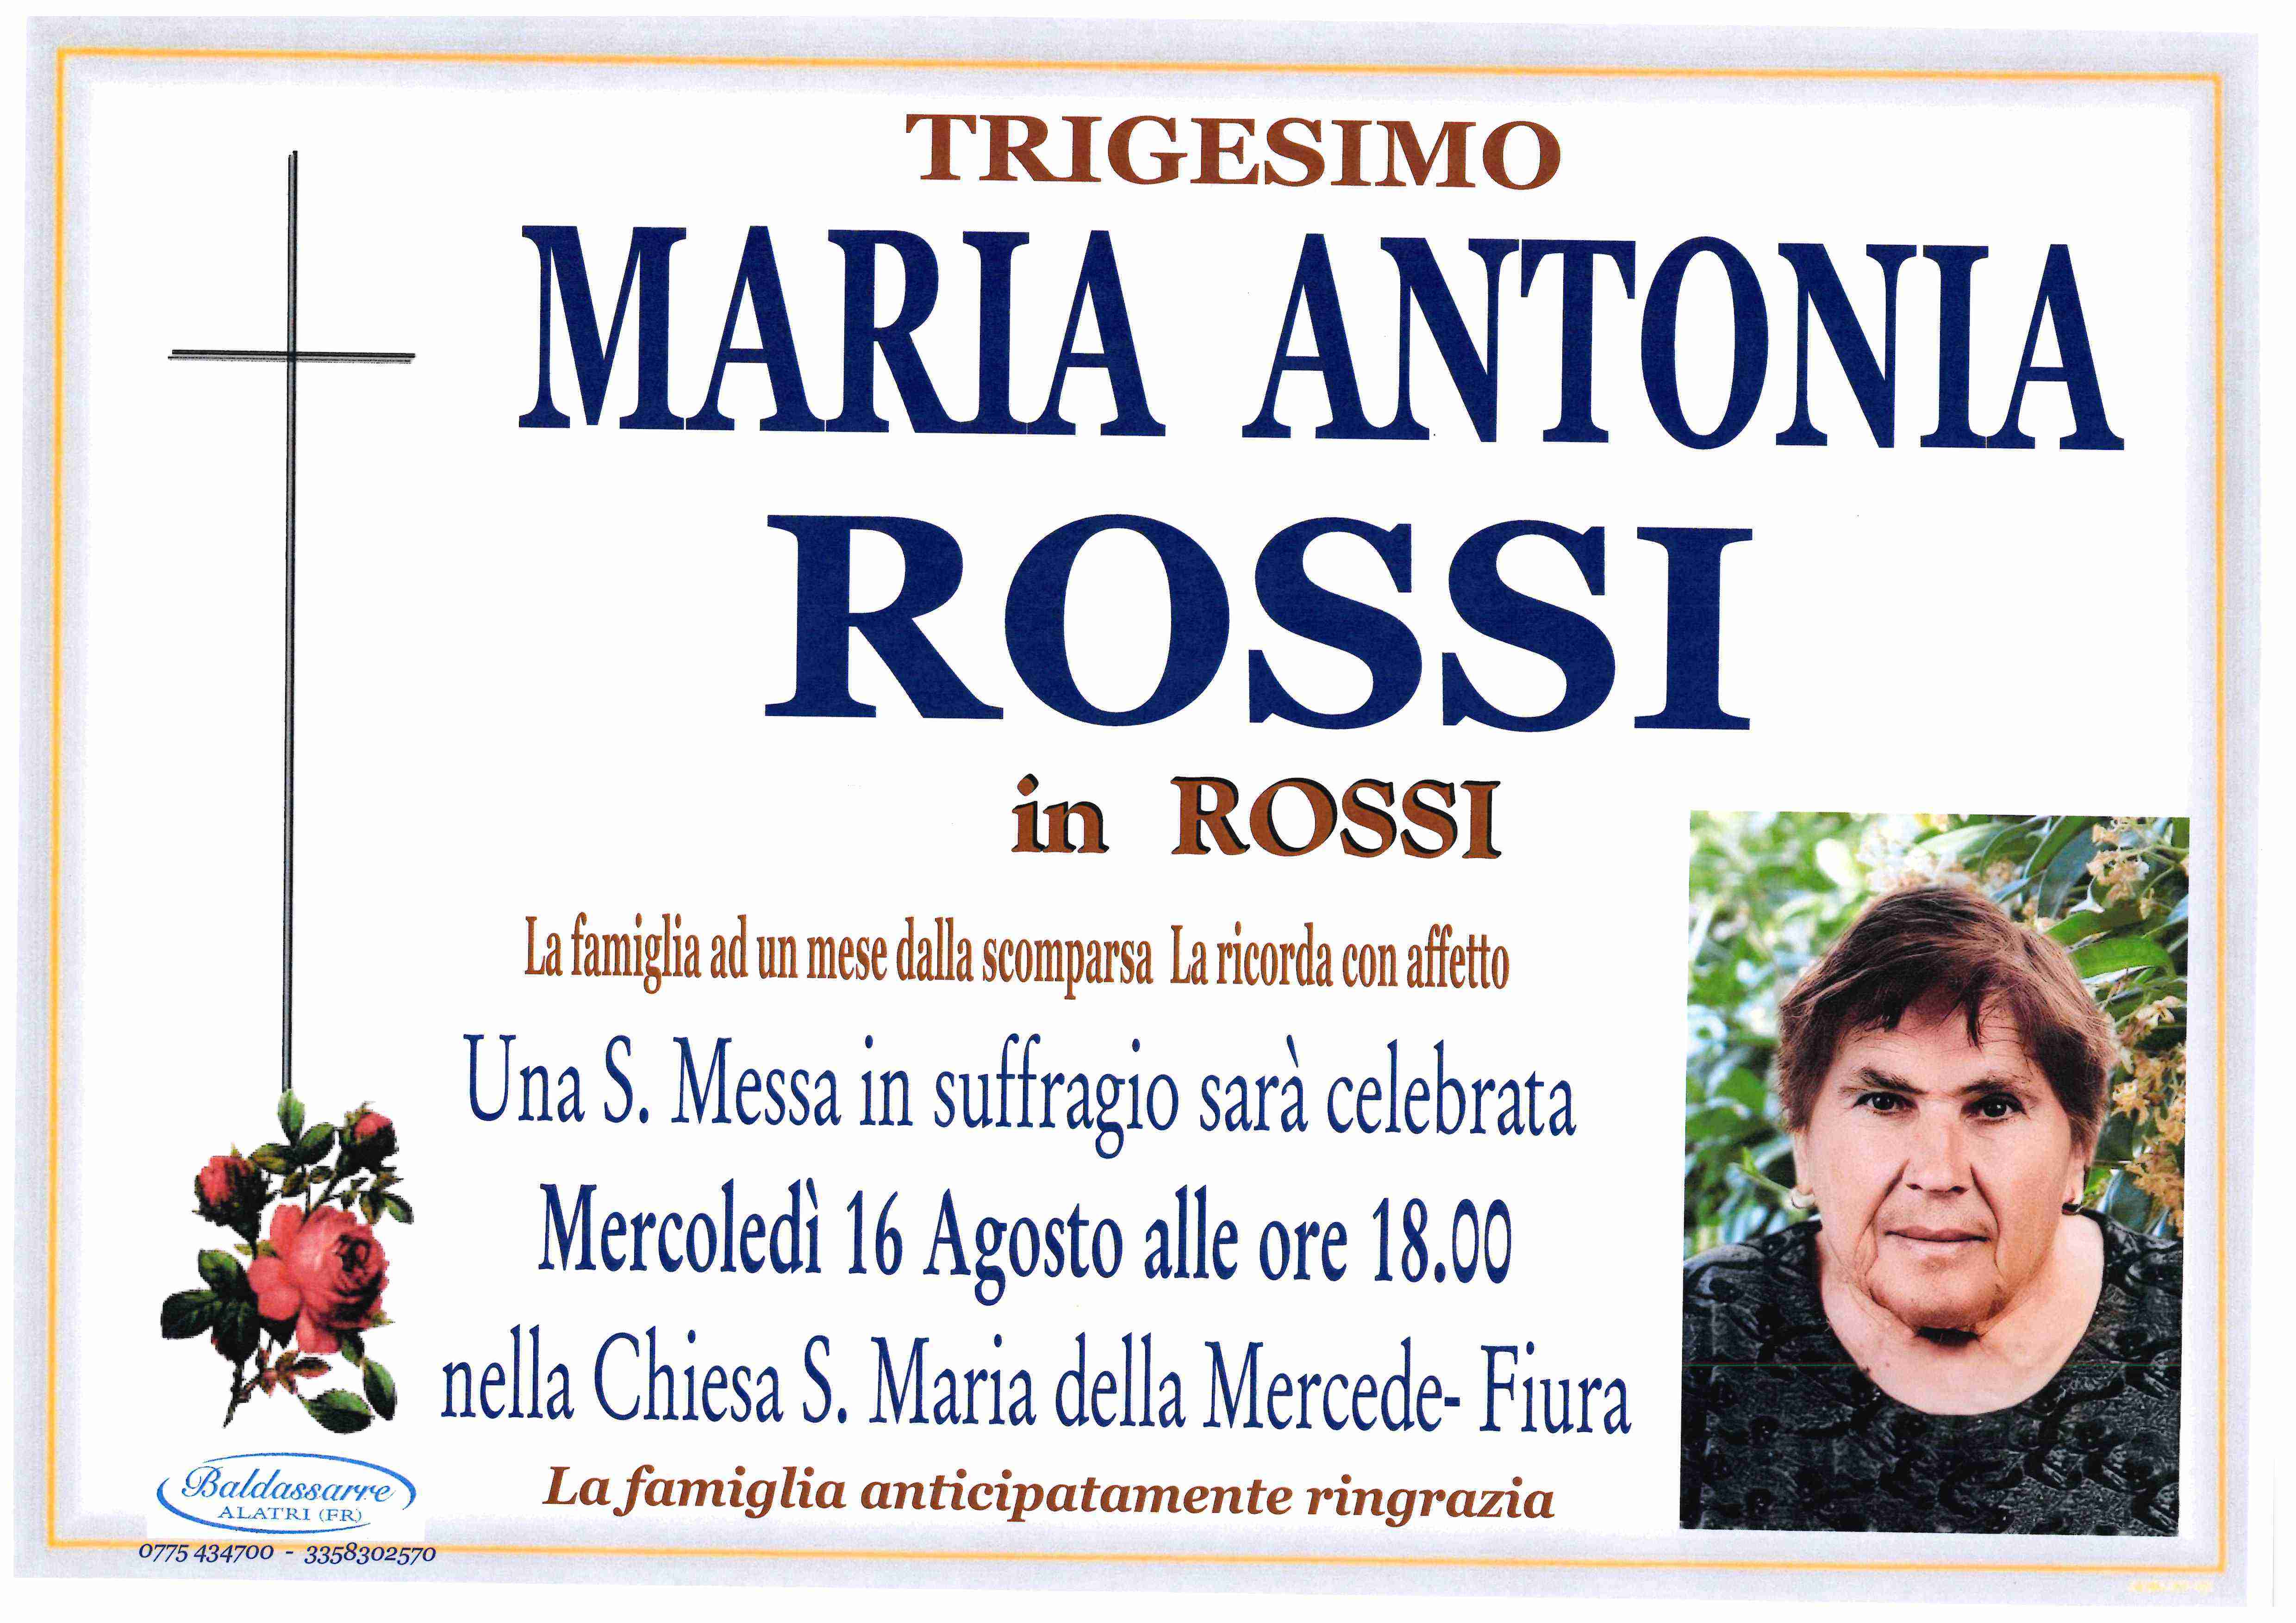 Maria Antonia Rossi